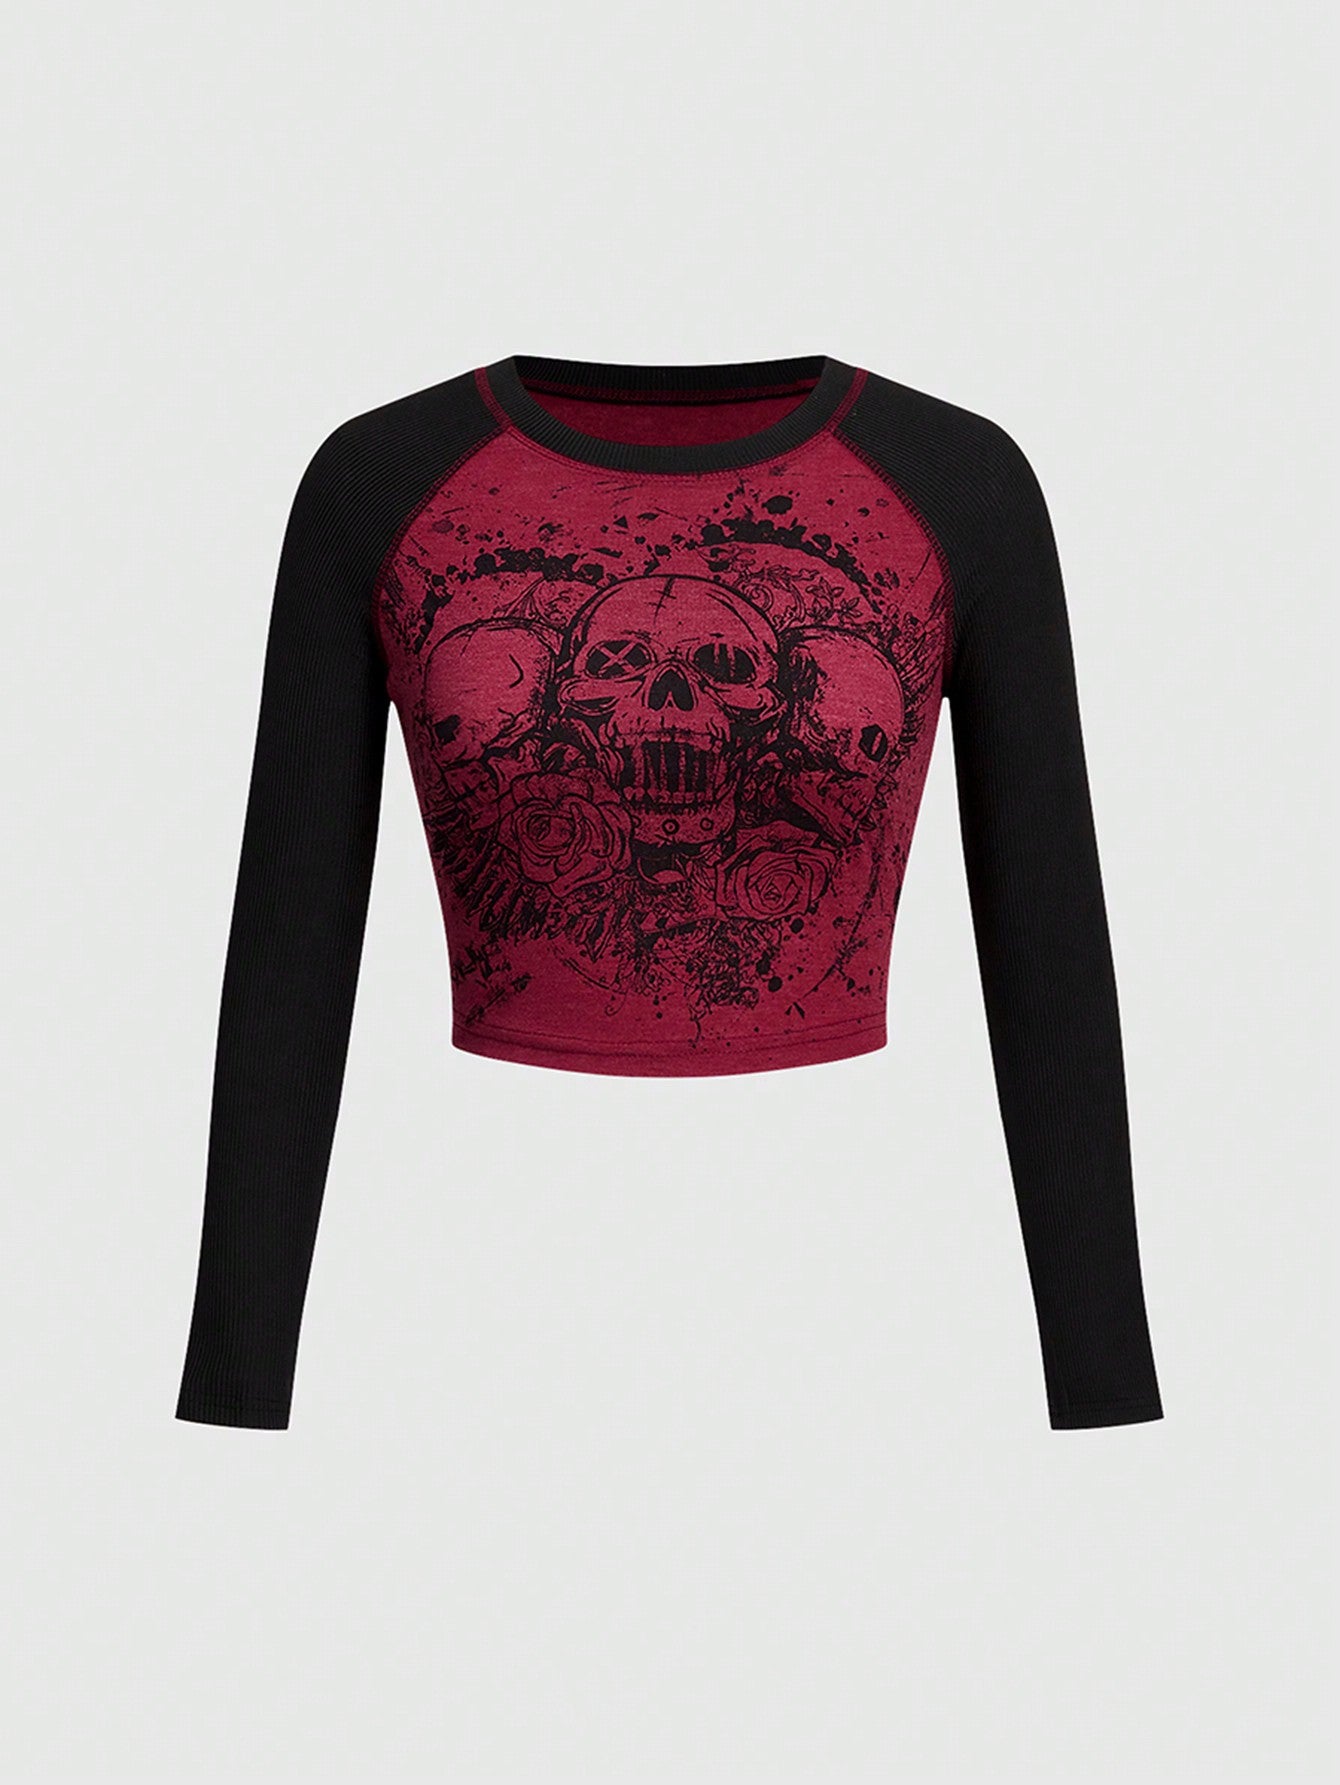 Women's Colorblock Skull Print Slim Fit T-Shirt